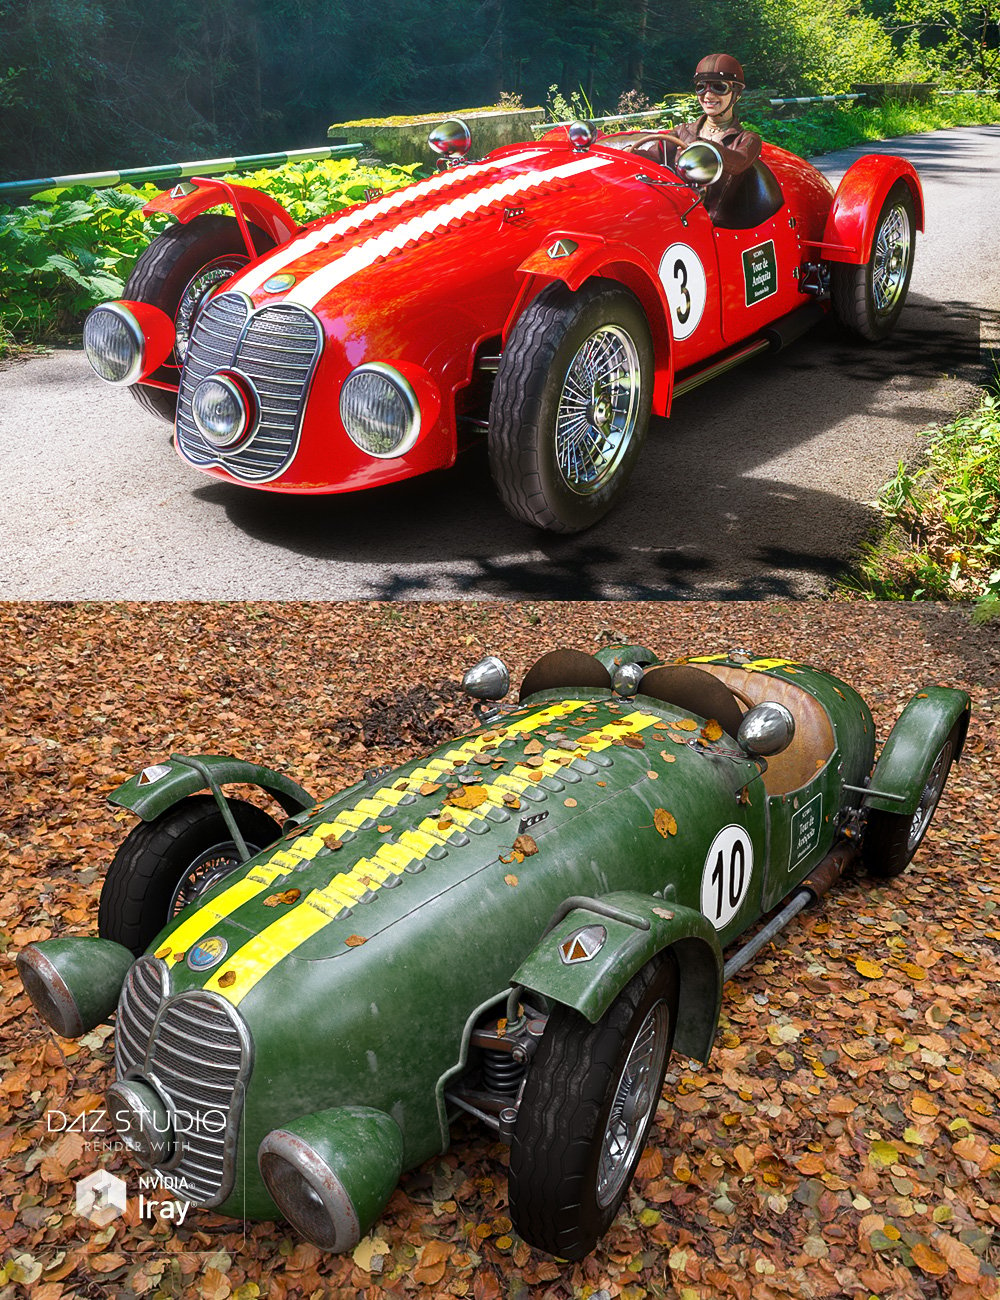 Sports Car Meteor Iray by: Dumor3D, 3D Models by Daz 3D